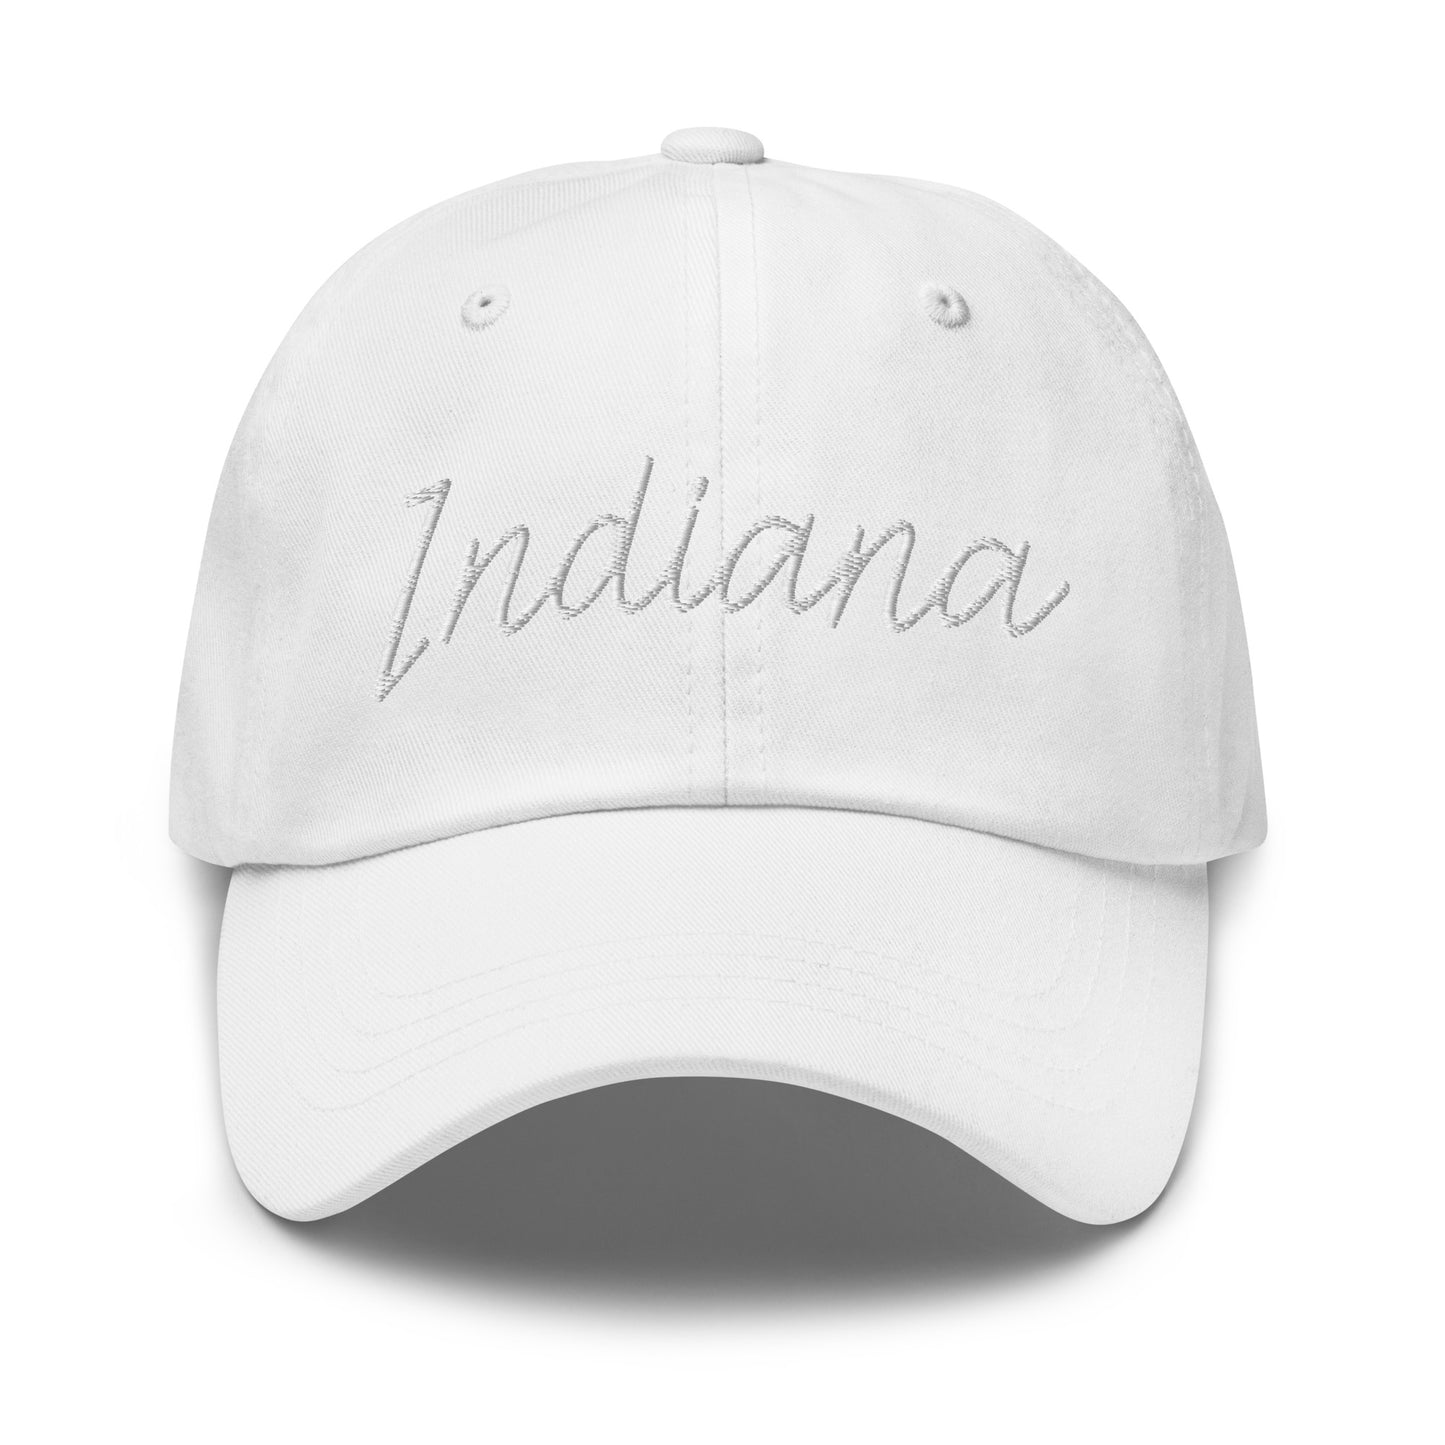 Indiana Retro Script Dad Hat